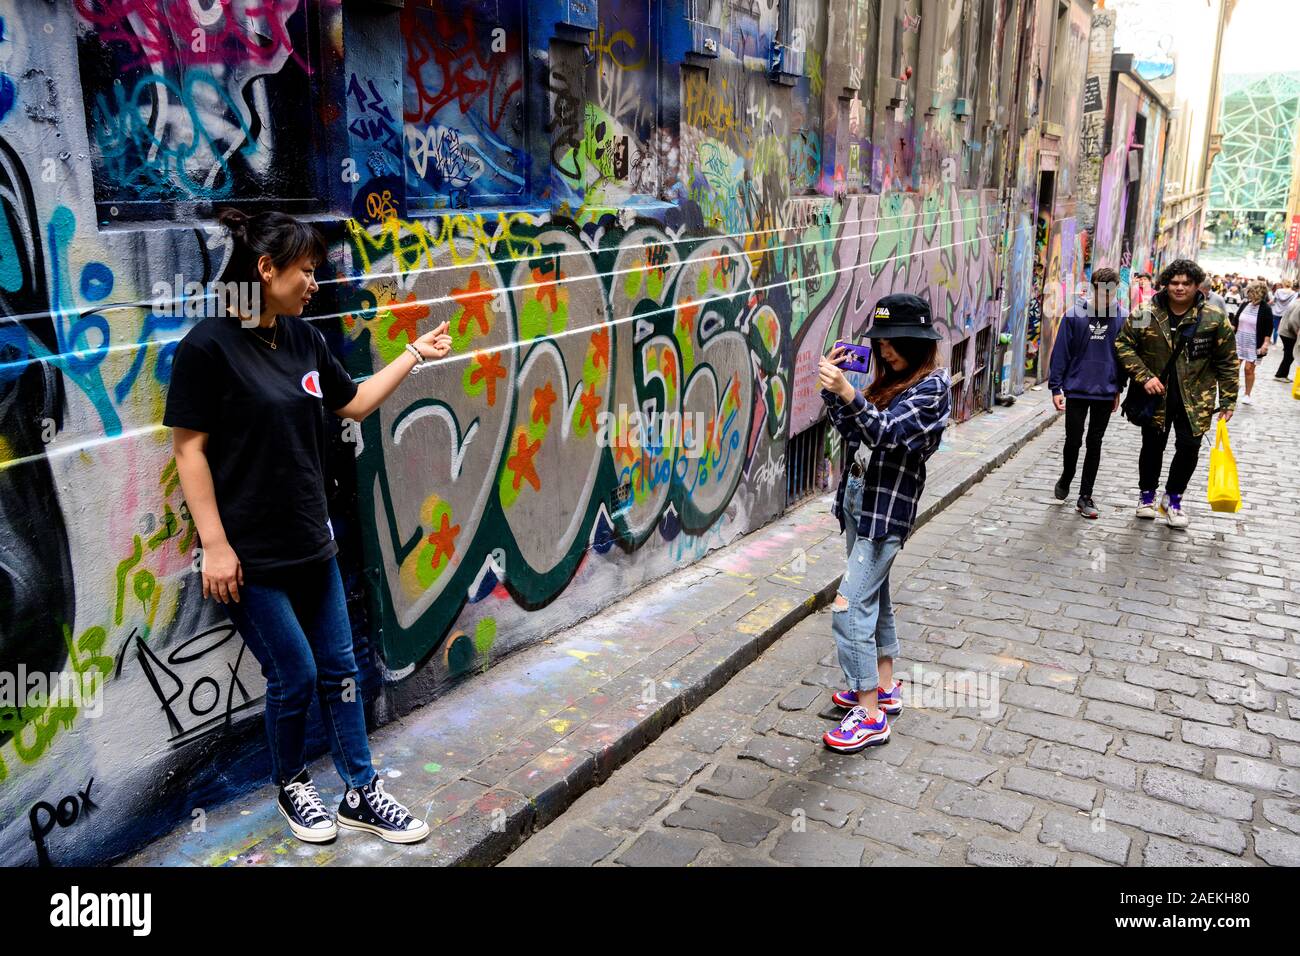 Création des images de voyageurs eux-mêmes, entouré par l'art de la rue, Melbourne, Victoria, Australie. Banque D'Images